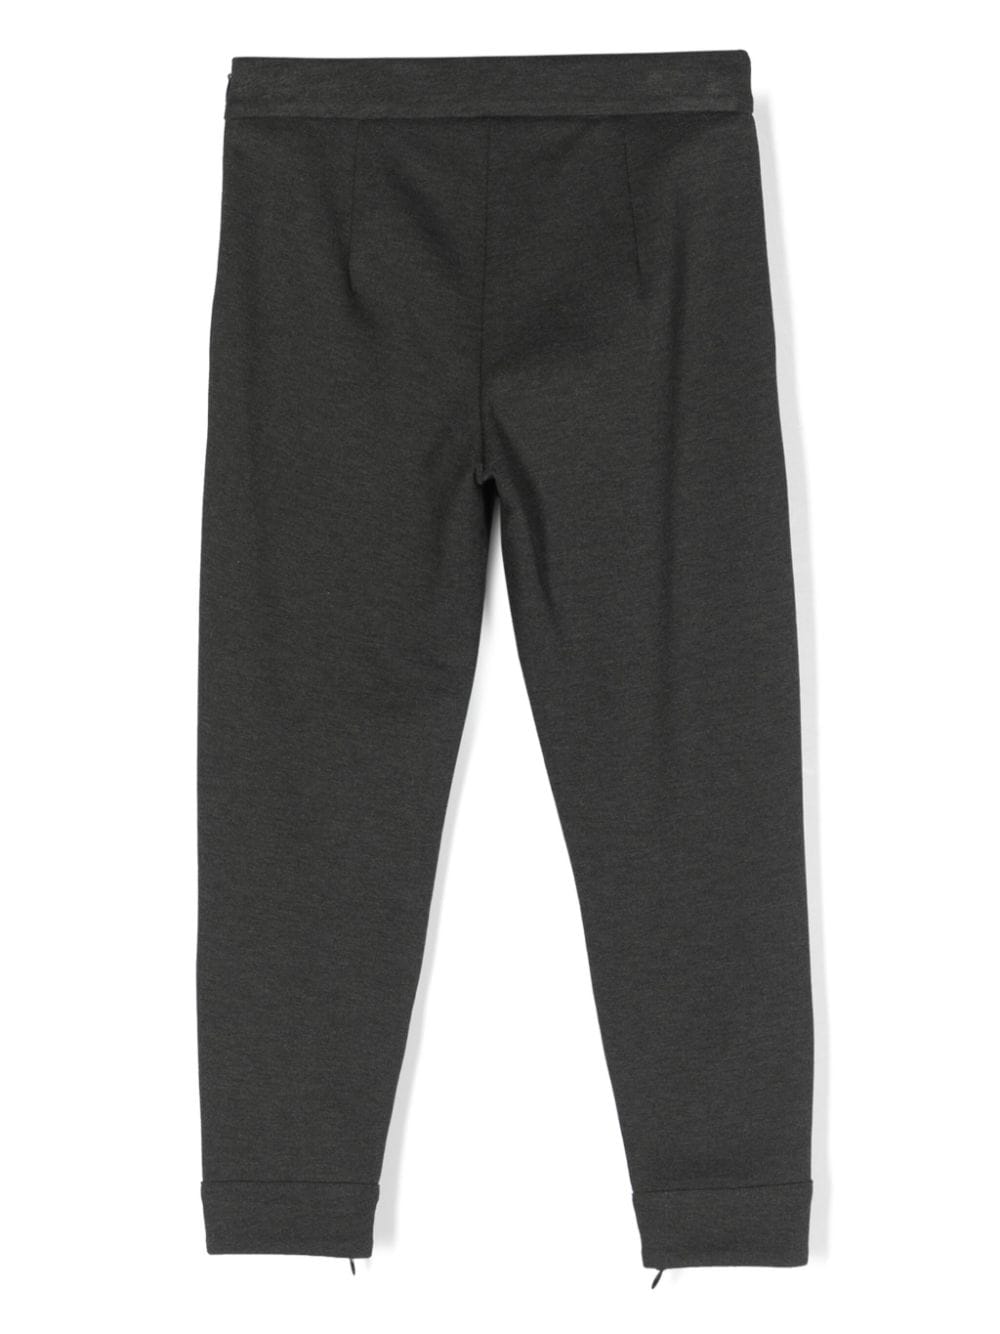 Pantalone grigio bambina,con apertura laterale sulla caviglia con zip